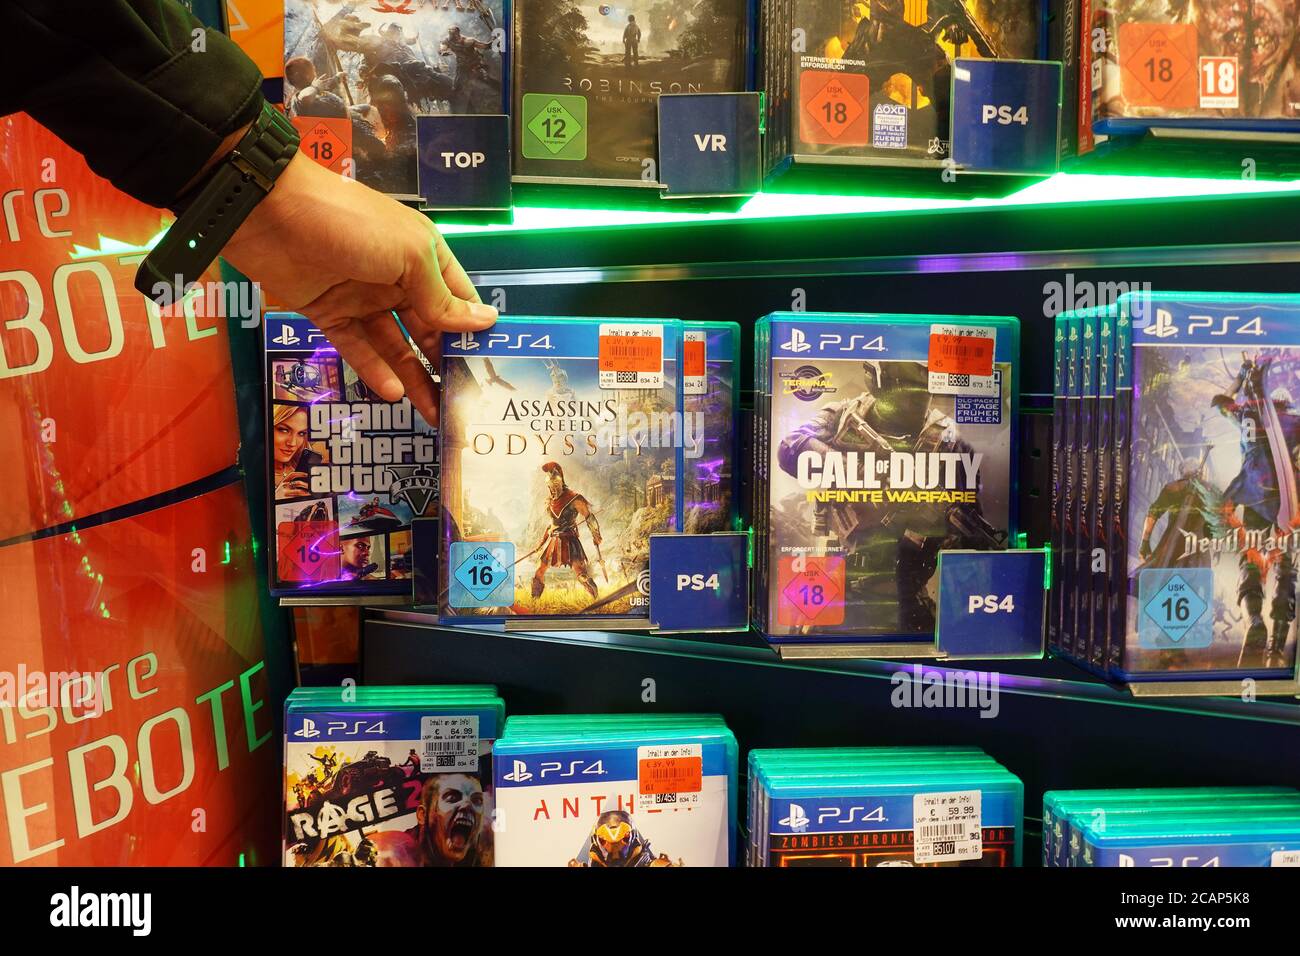 Jeu PS4 Assassin's Creed dans une boutique Banque D'Images